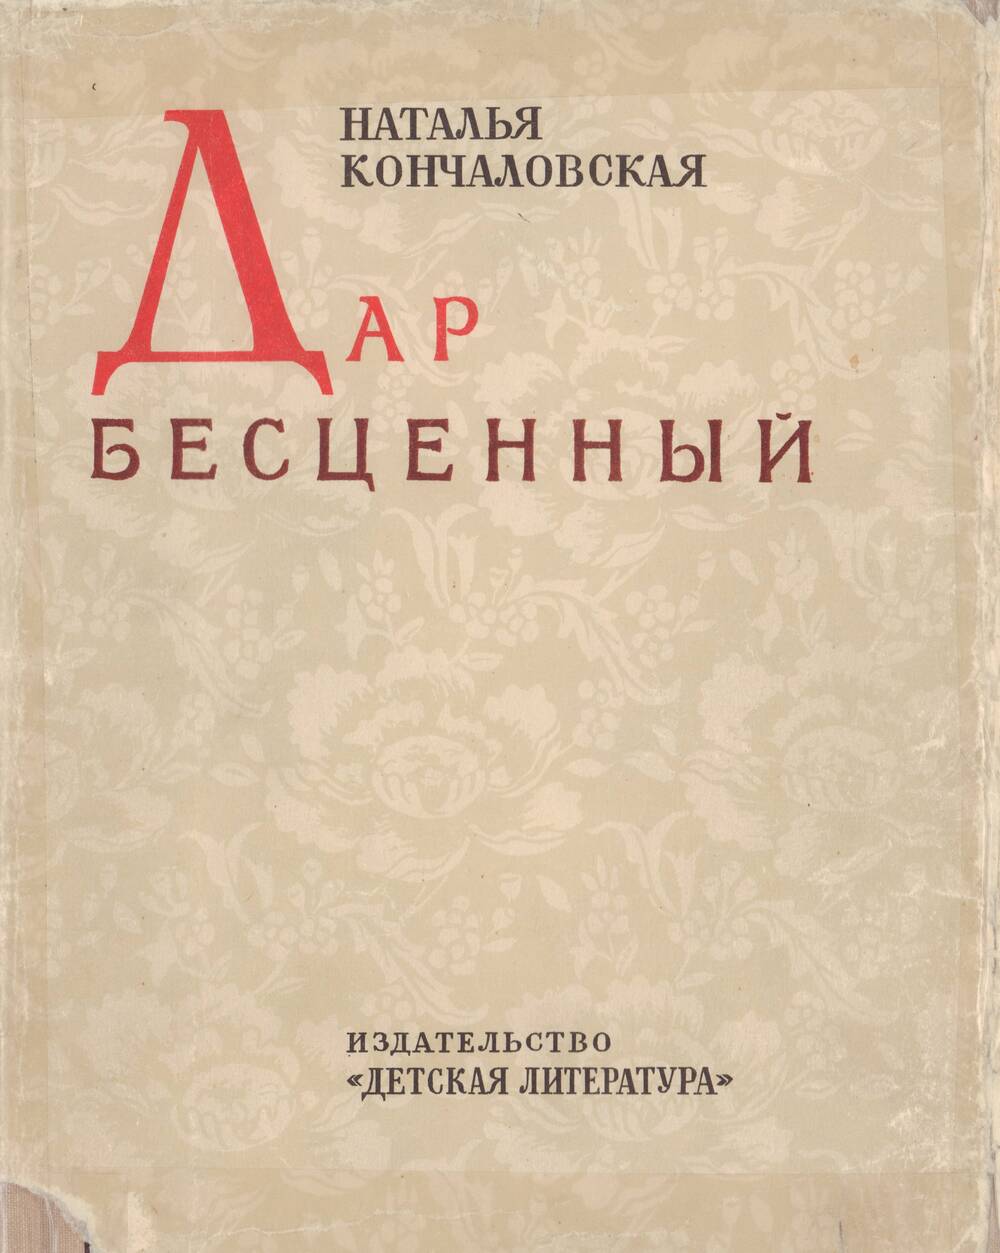 Книга: Н. П. Кончаловская «Дар бесценный».